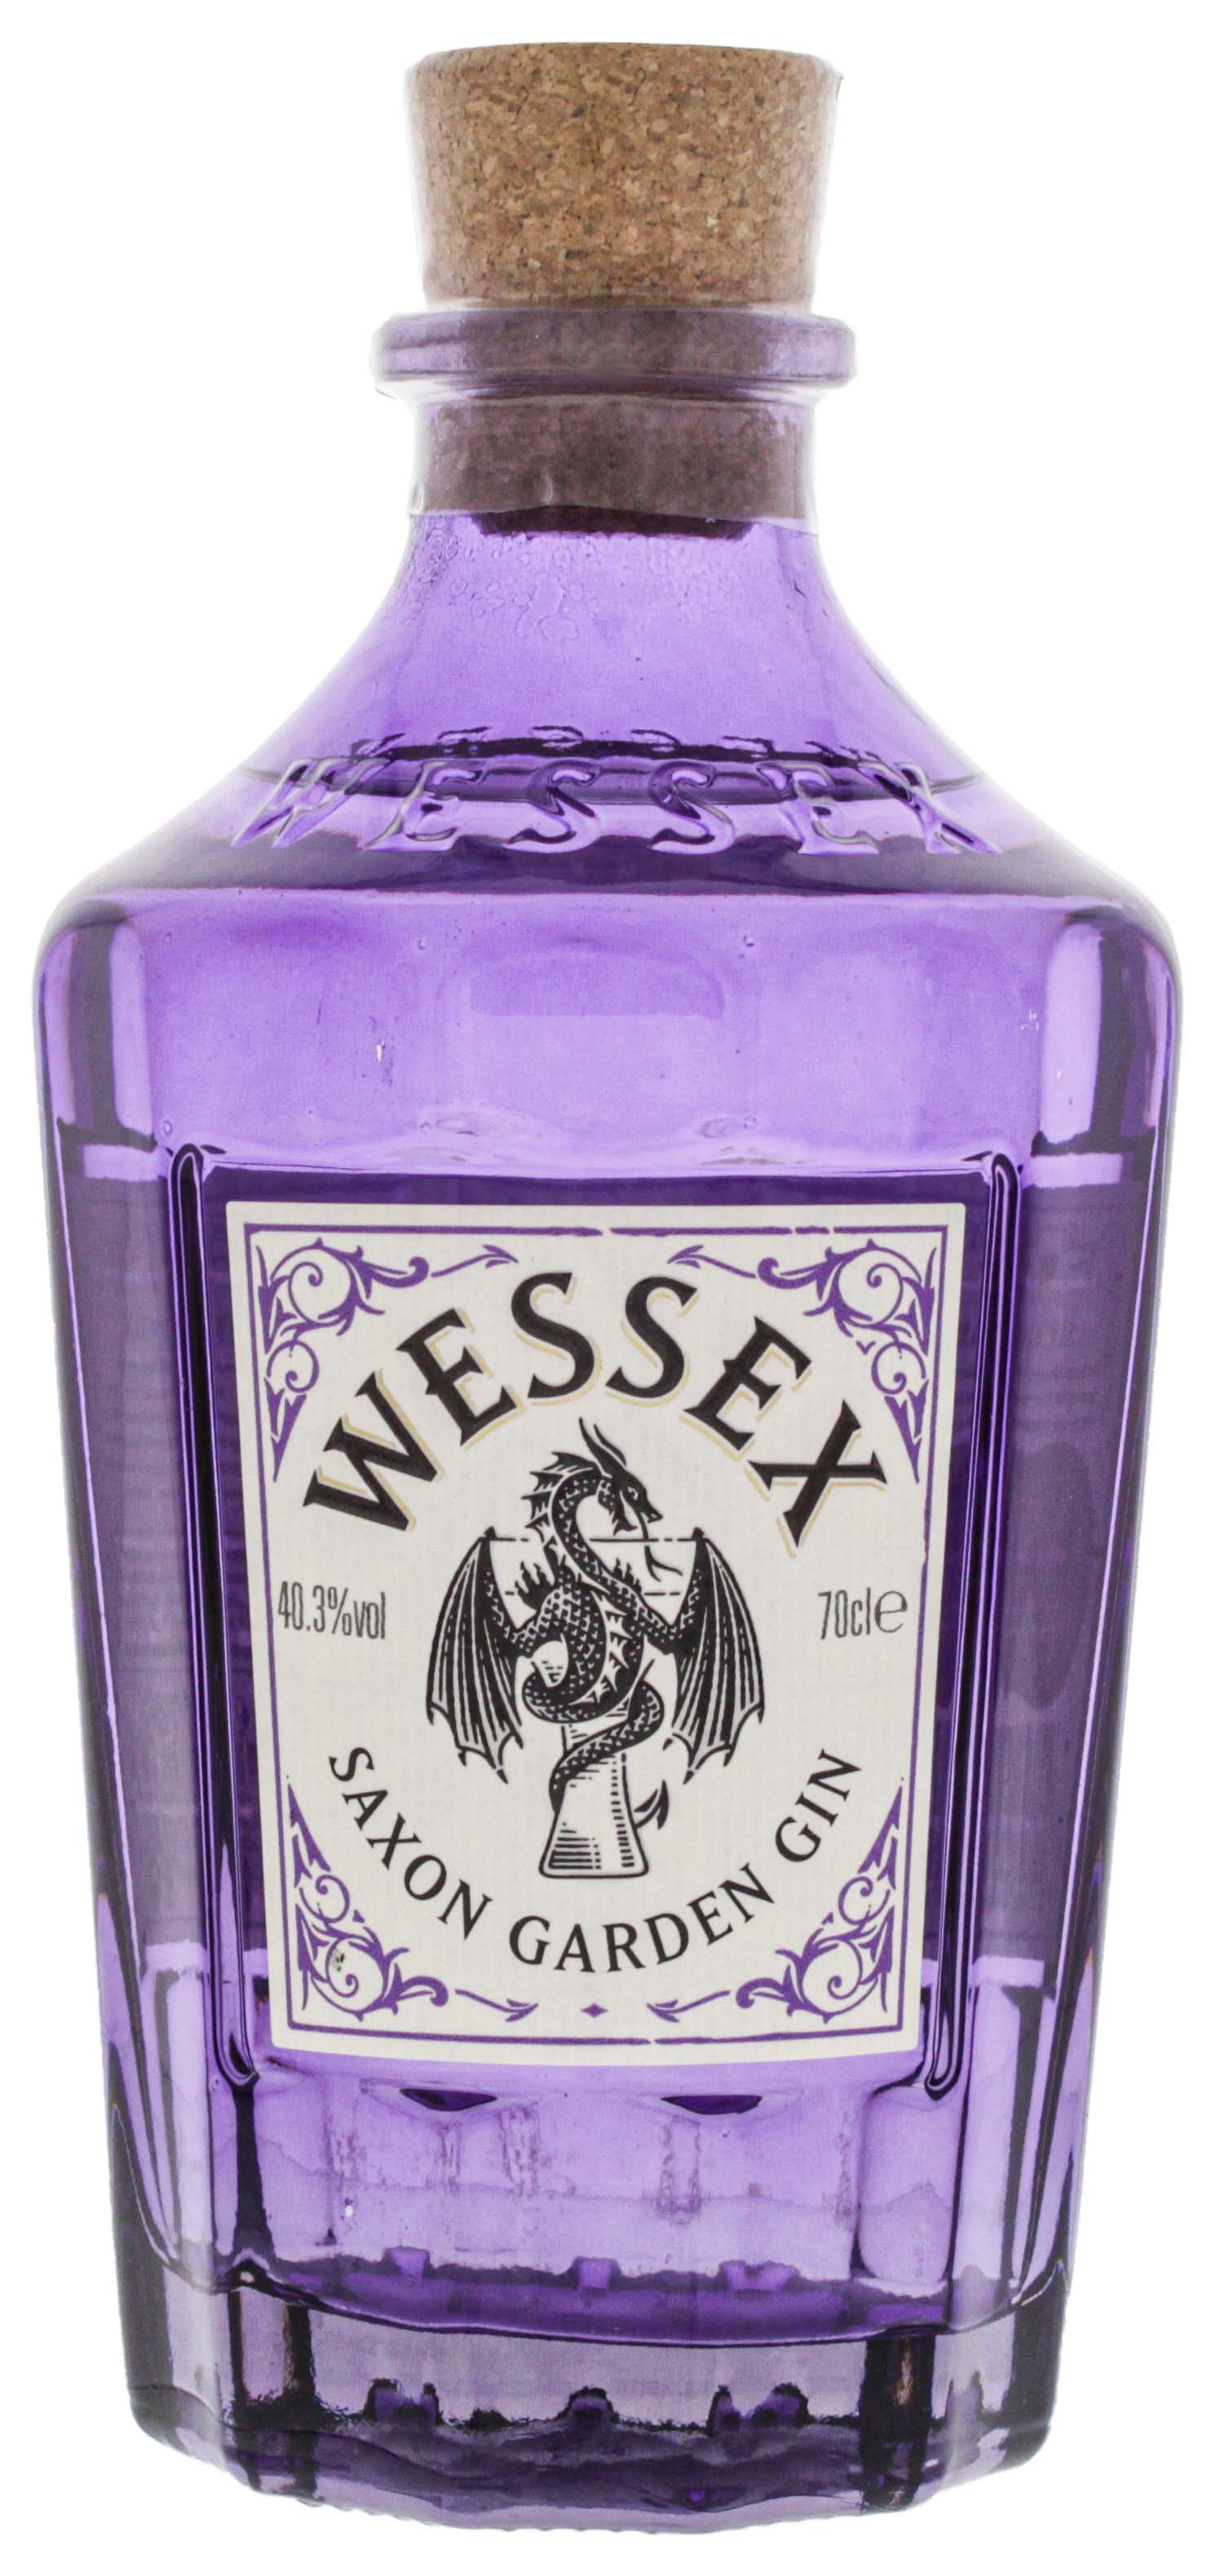 Wessex Saxon Garden Gin 0,7L 40,3%